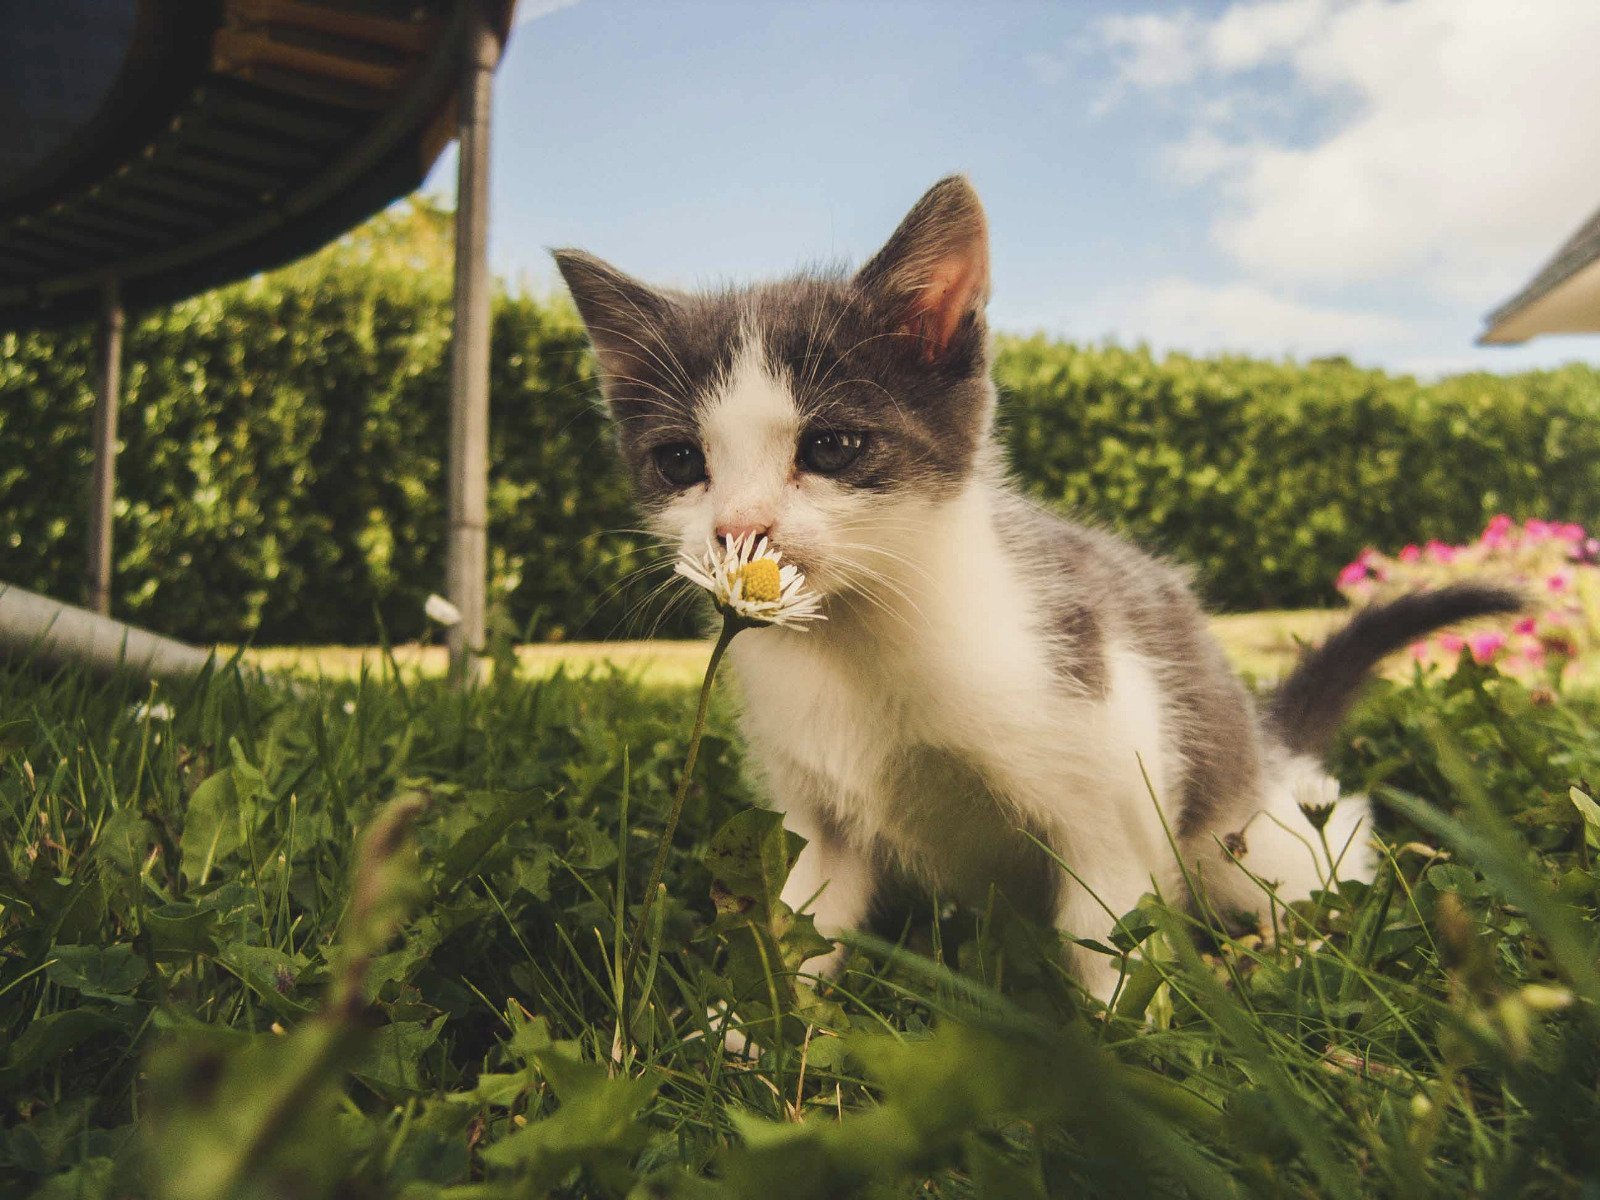 Kotek wącha kwiatek w ogrodzie